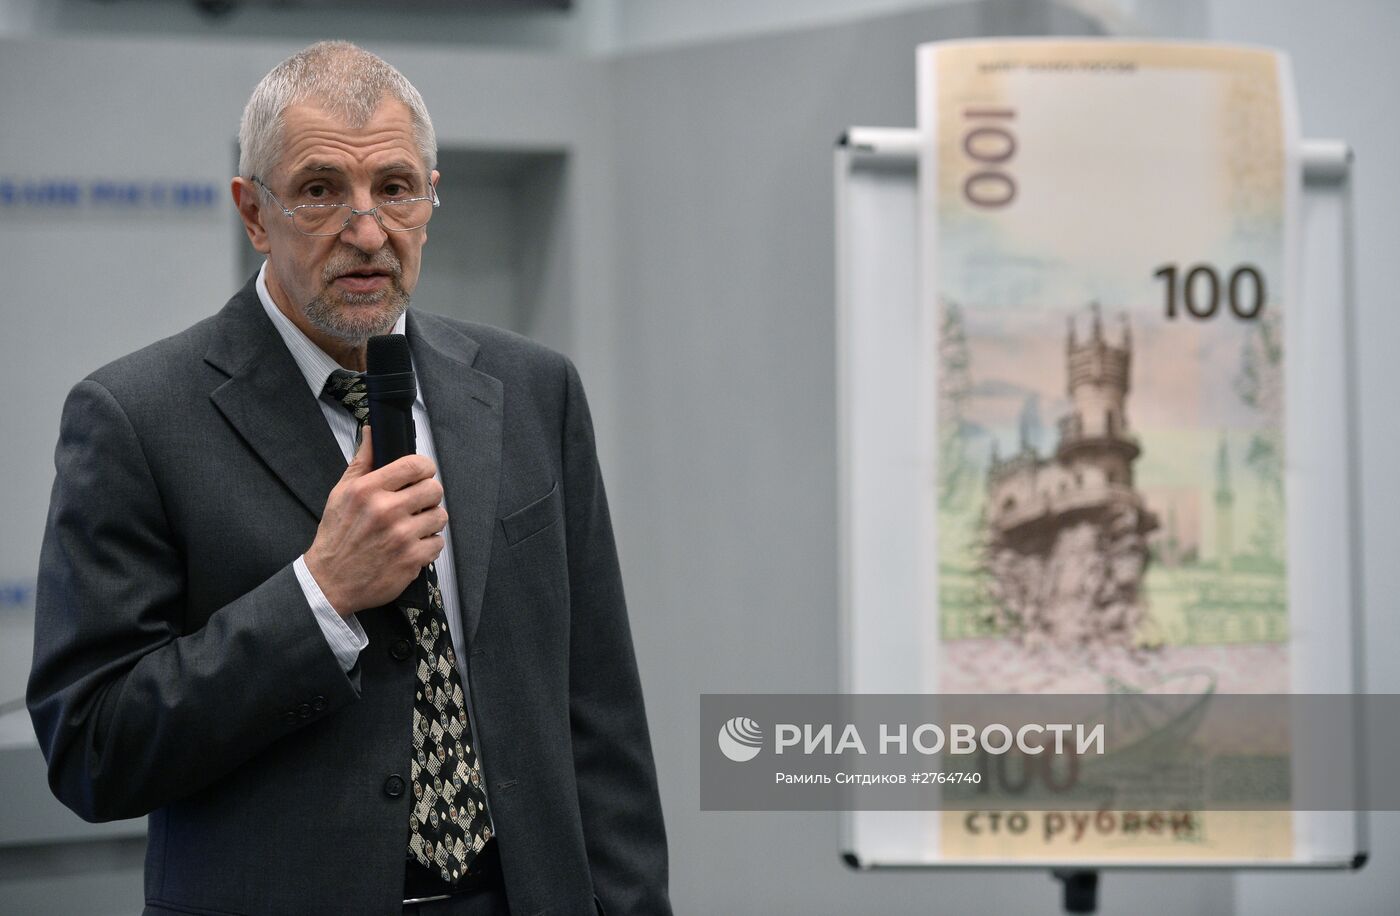 Банк России выпустил банкноту номиналом 100 рублей, посвященную Крыму и Севастополю